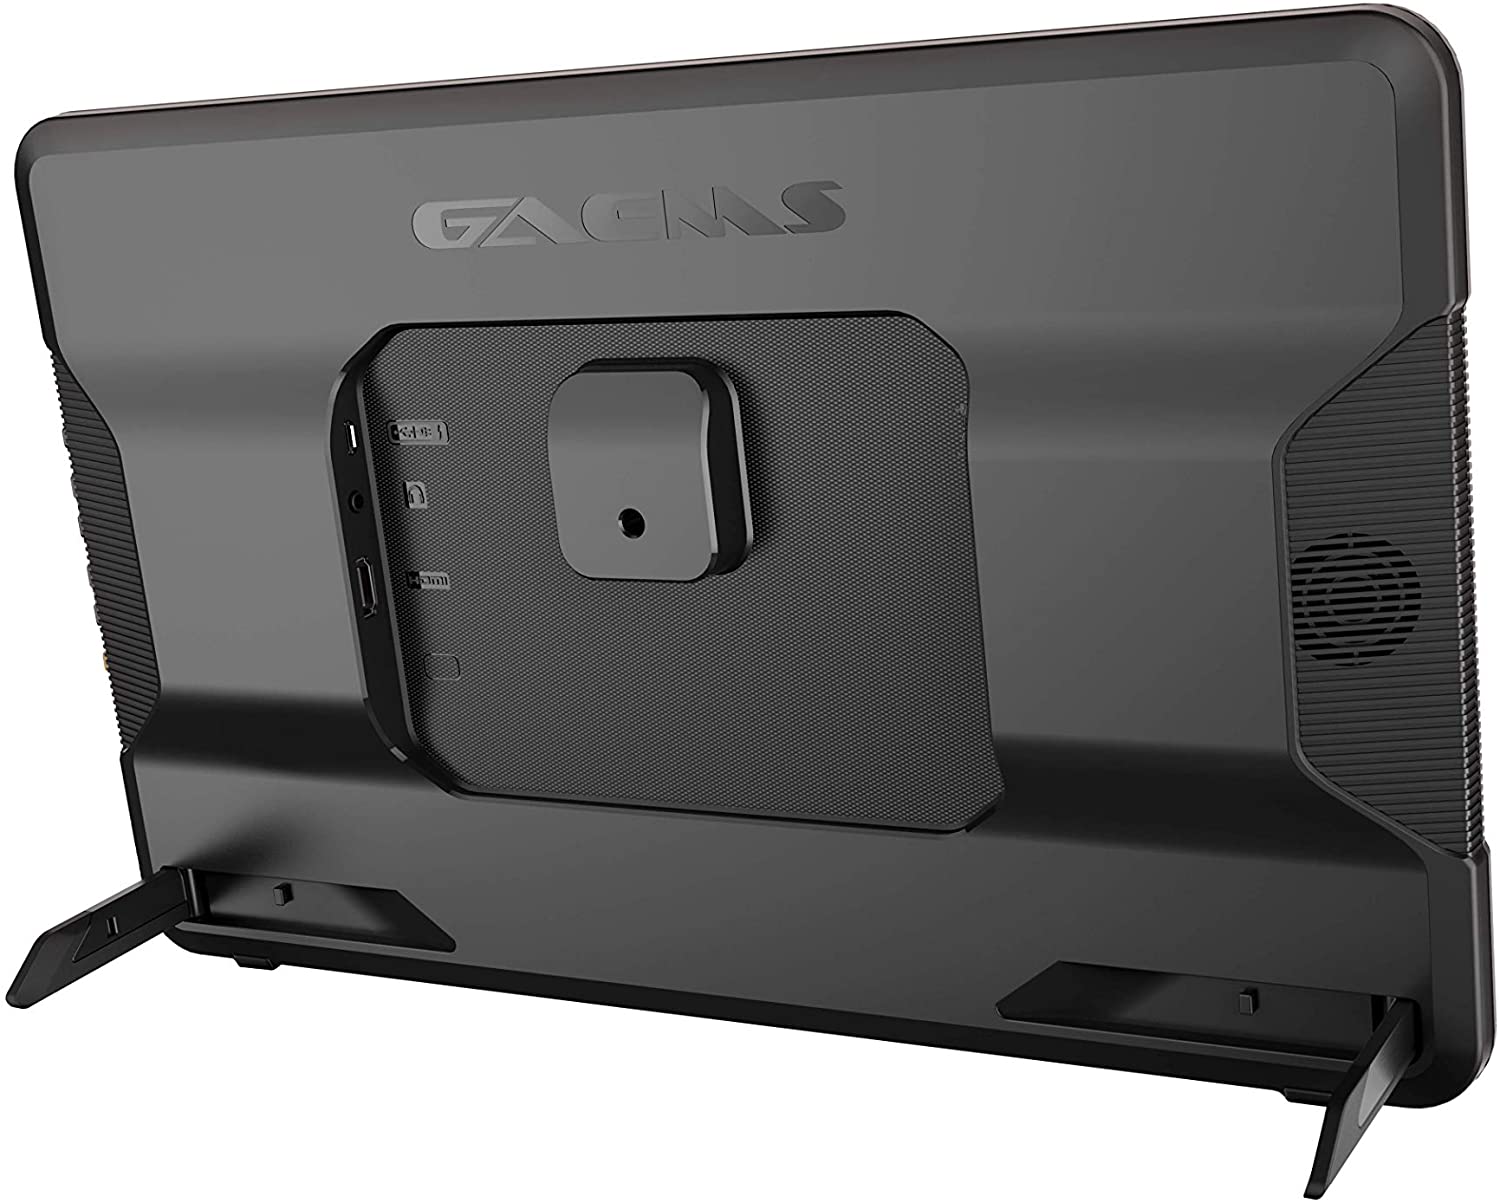 GAEMS - Guardian Pro XP 24 (ecran de Jeu QHD) Moniteur de Jeu QHD